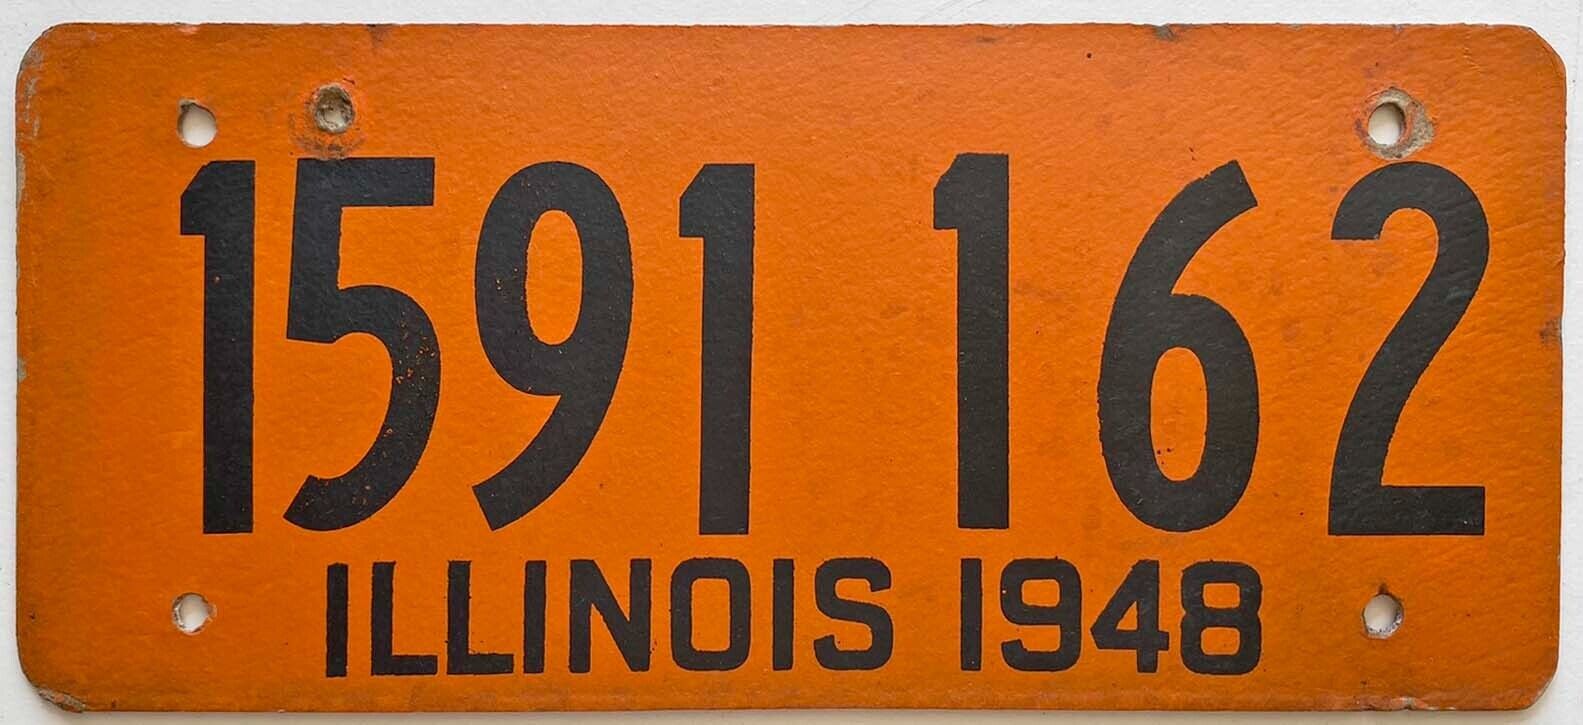 Colorful Orange Illinois 1948 Fiberboard License Plate 1591 162